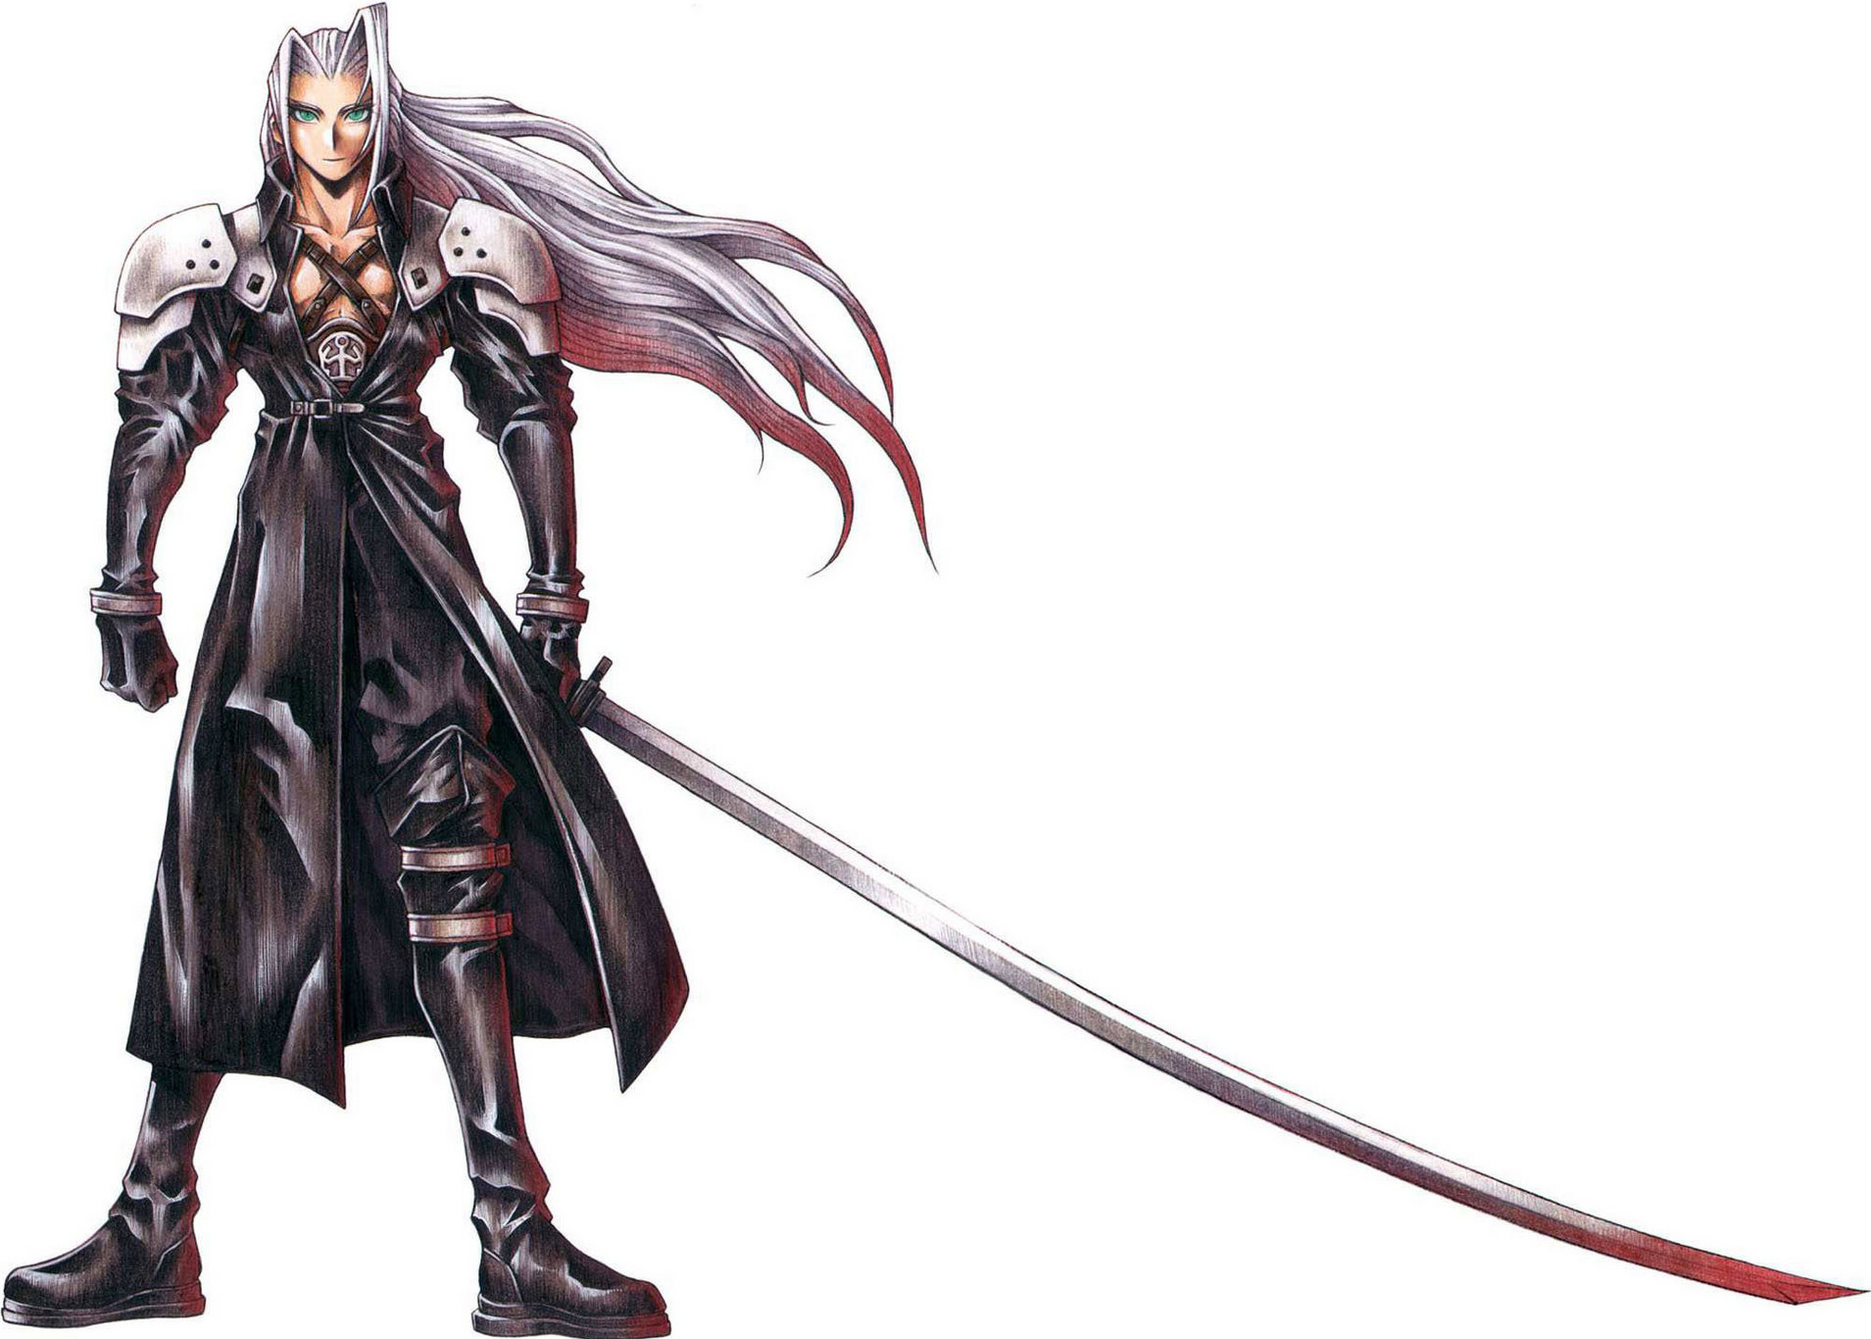 Sephiroth: Chào mừng bạn đến với thế giới của Sephiroth - một trong những nhân vật ấn tượng nhất trong lịch sử trò chơi điện tử. Hãy cùng khám phá sức mạnh và những chiến thuật đặc biệt của Sephiroth trong những hình ảnh đầy bất ngờ và hiện đại.